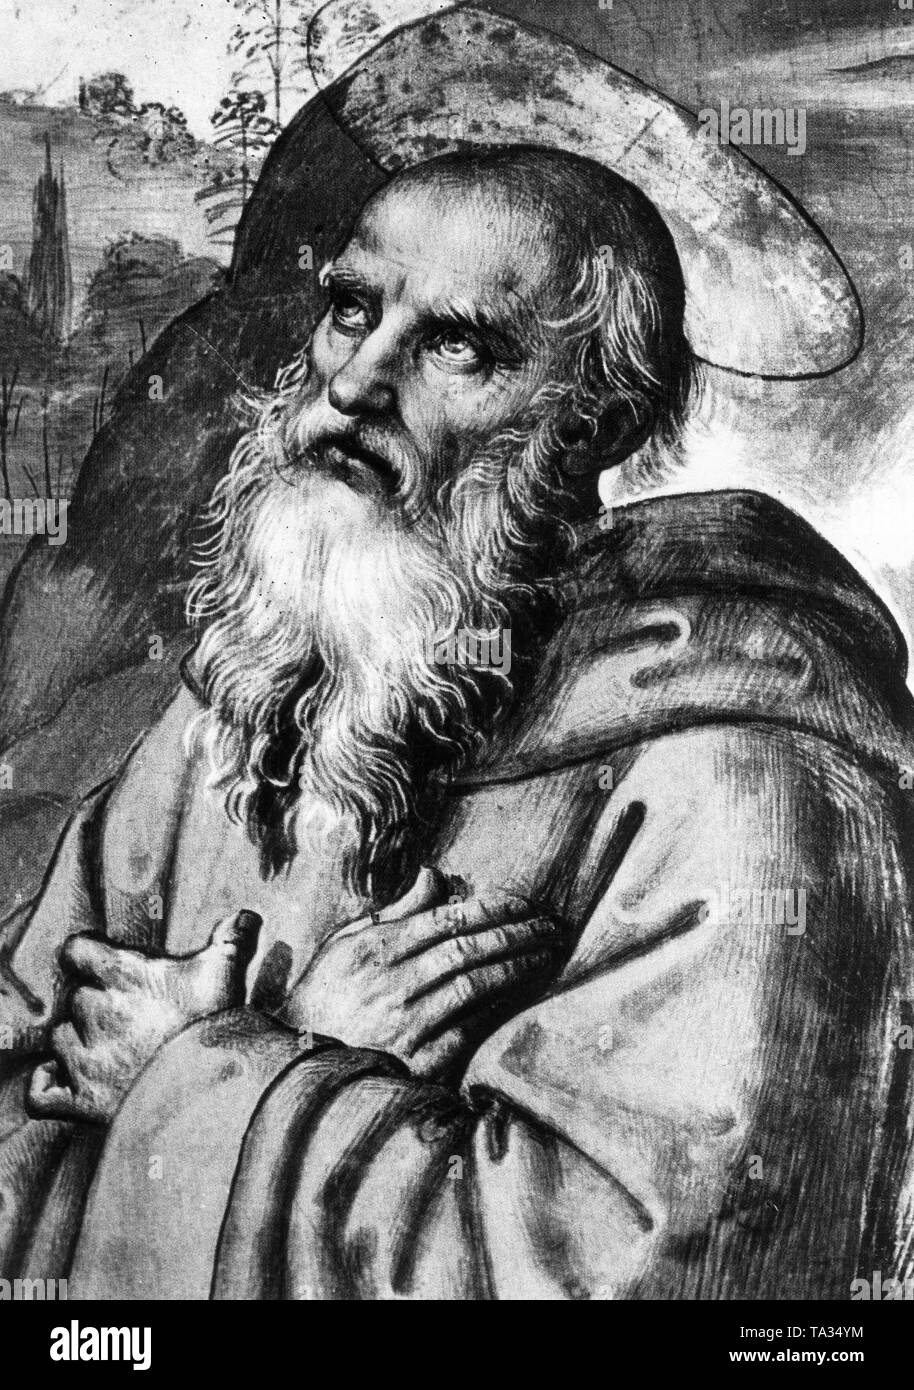 Représentation de Saint Benoît de Nursie (480-542), fondateur du monachisme occidental. Image après une fresque de Pietro Perugino Banque D'Images